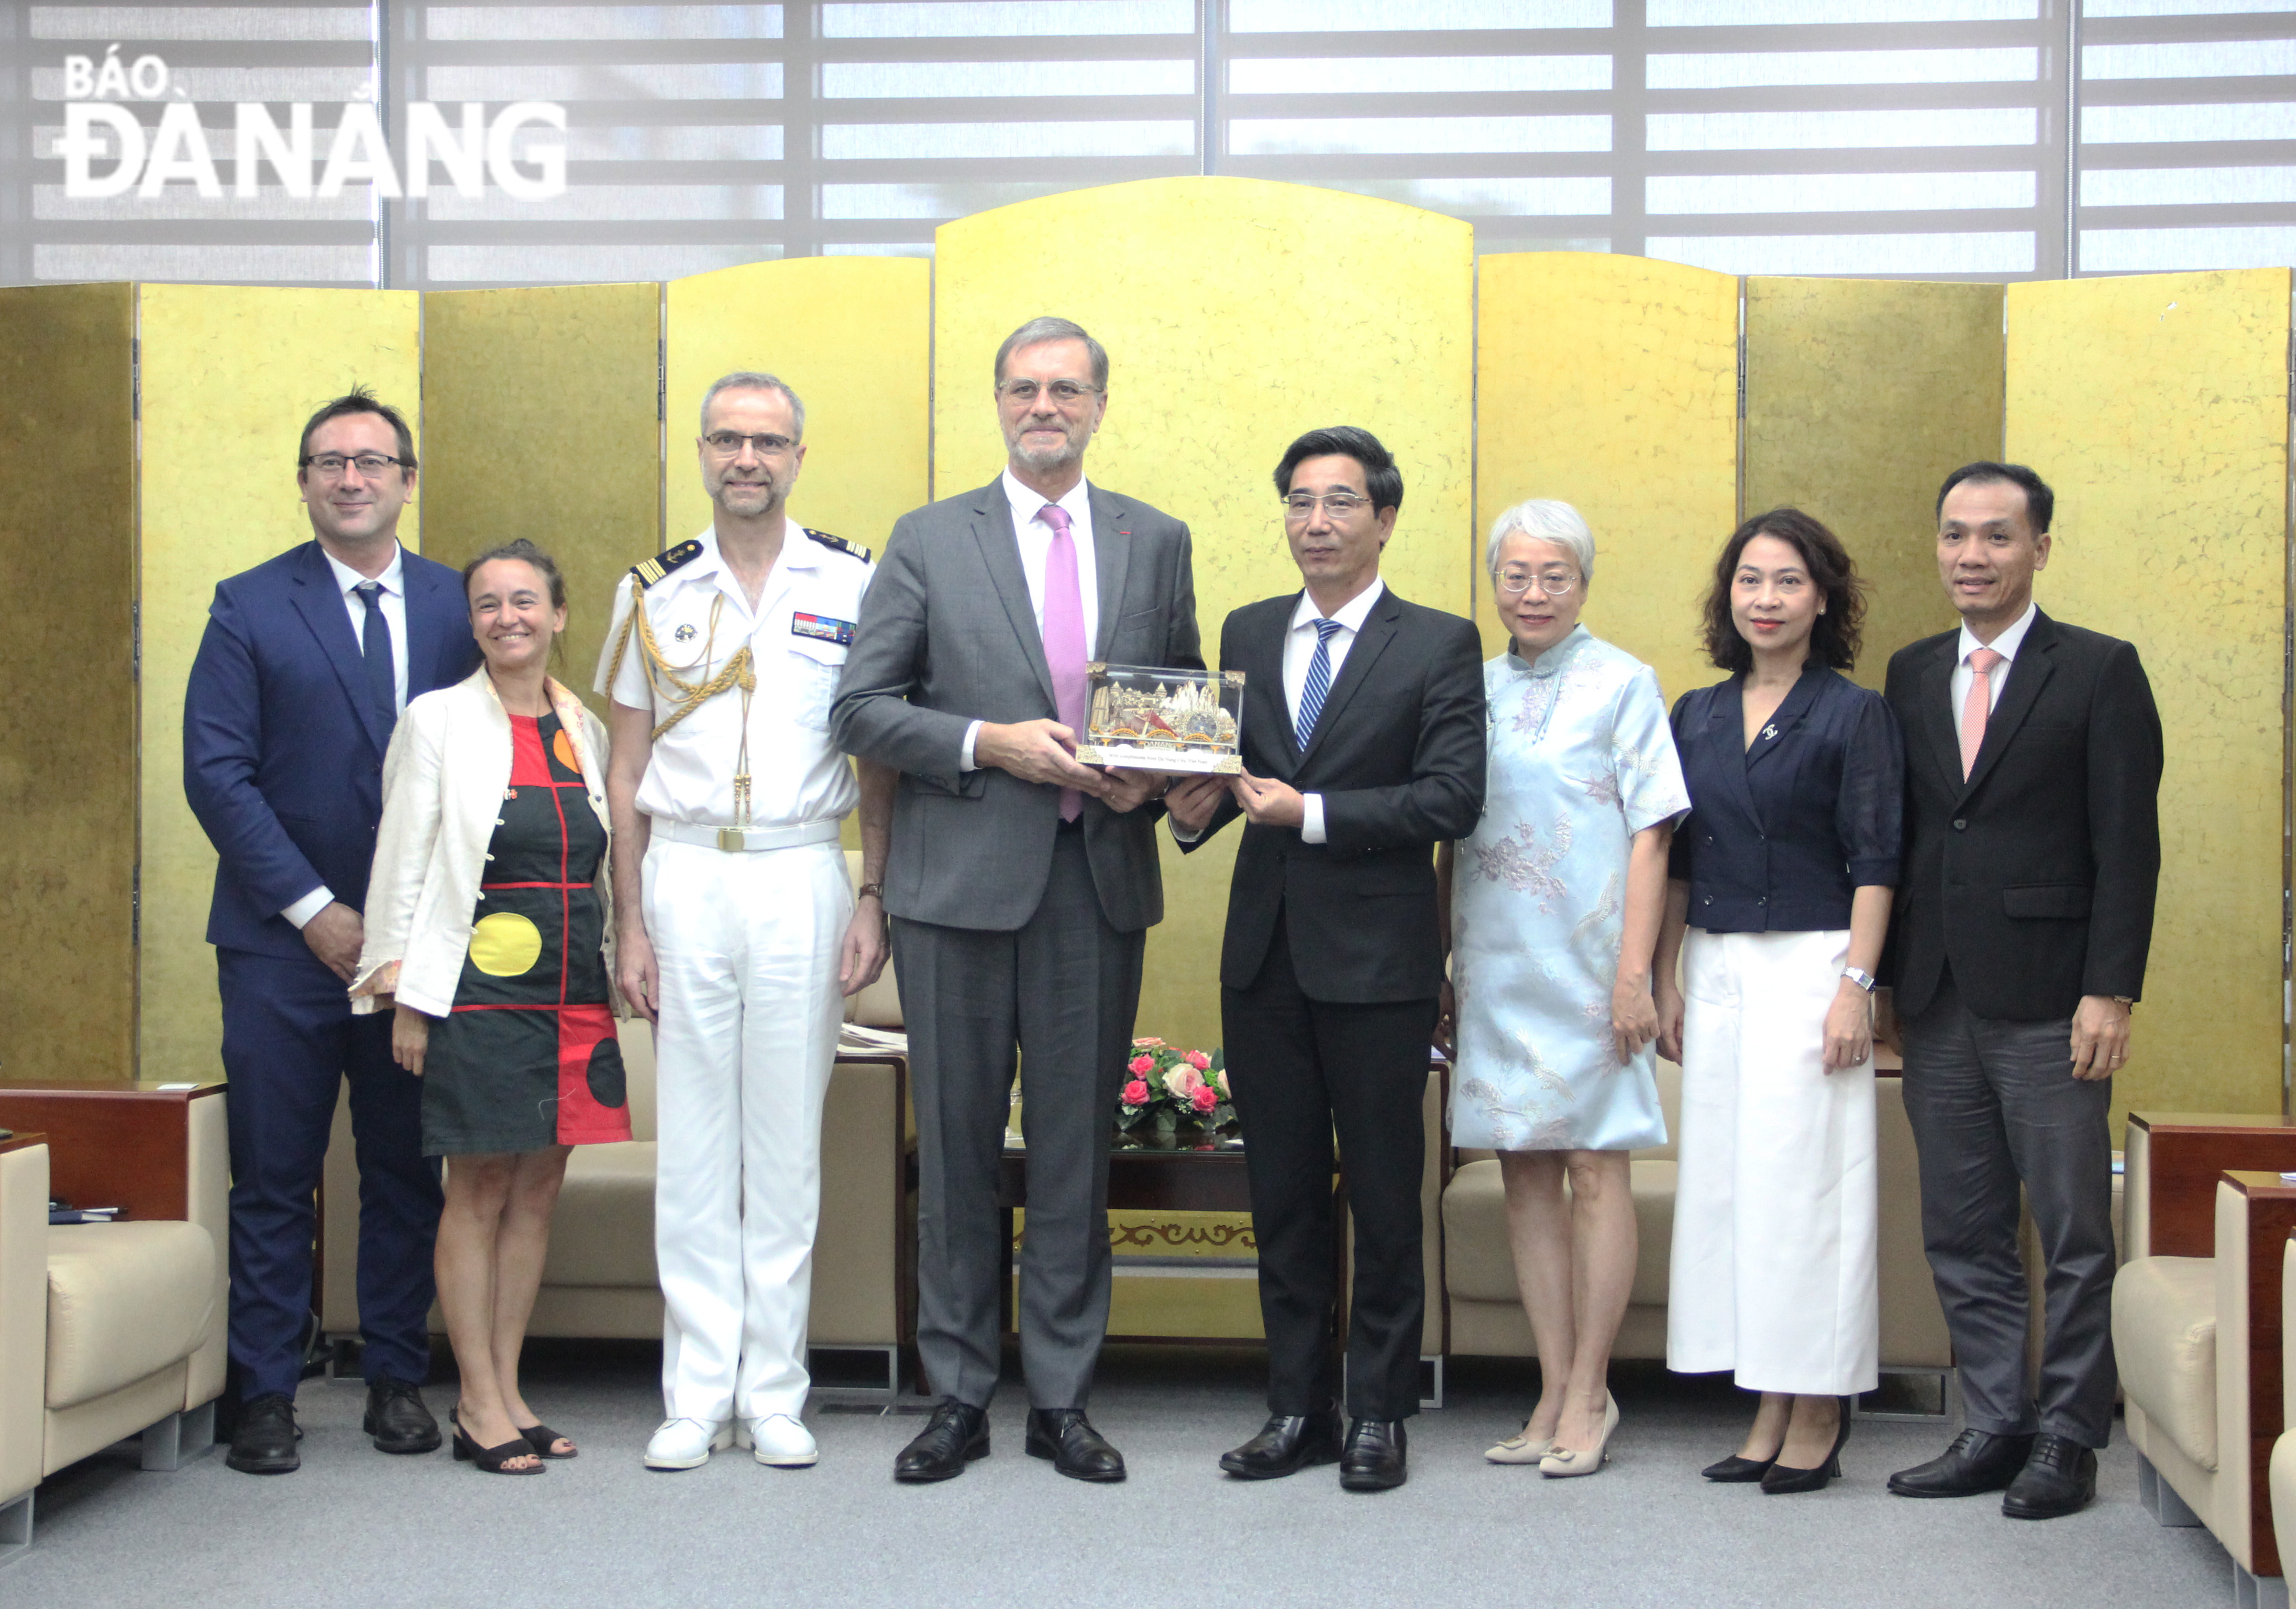 Phó Chủ tịch UBND thành phố Trần Chí Cường (thứ 4, bên phải qua) tặng quà lưu niệm cho Đại sứ Pháp tại Việt Nam Olivier Brochet (thứ 5, bên phải qua). Ảnh: X.HẬU